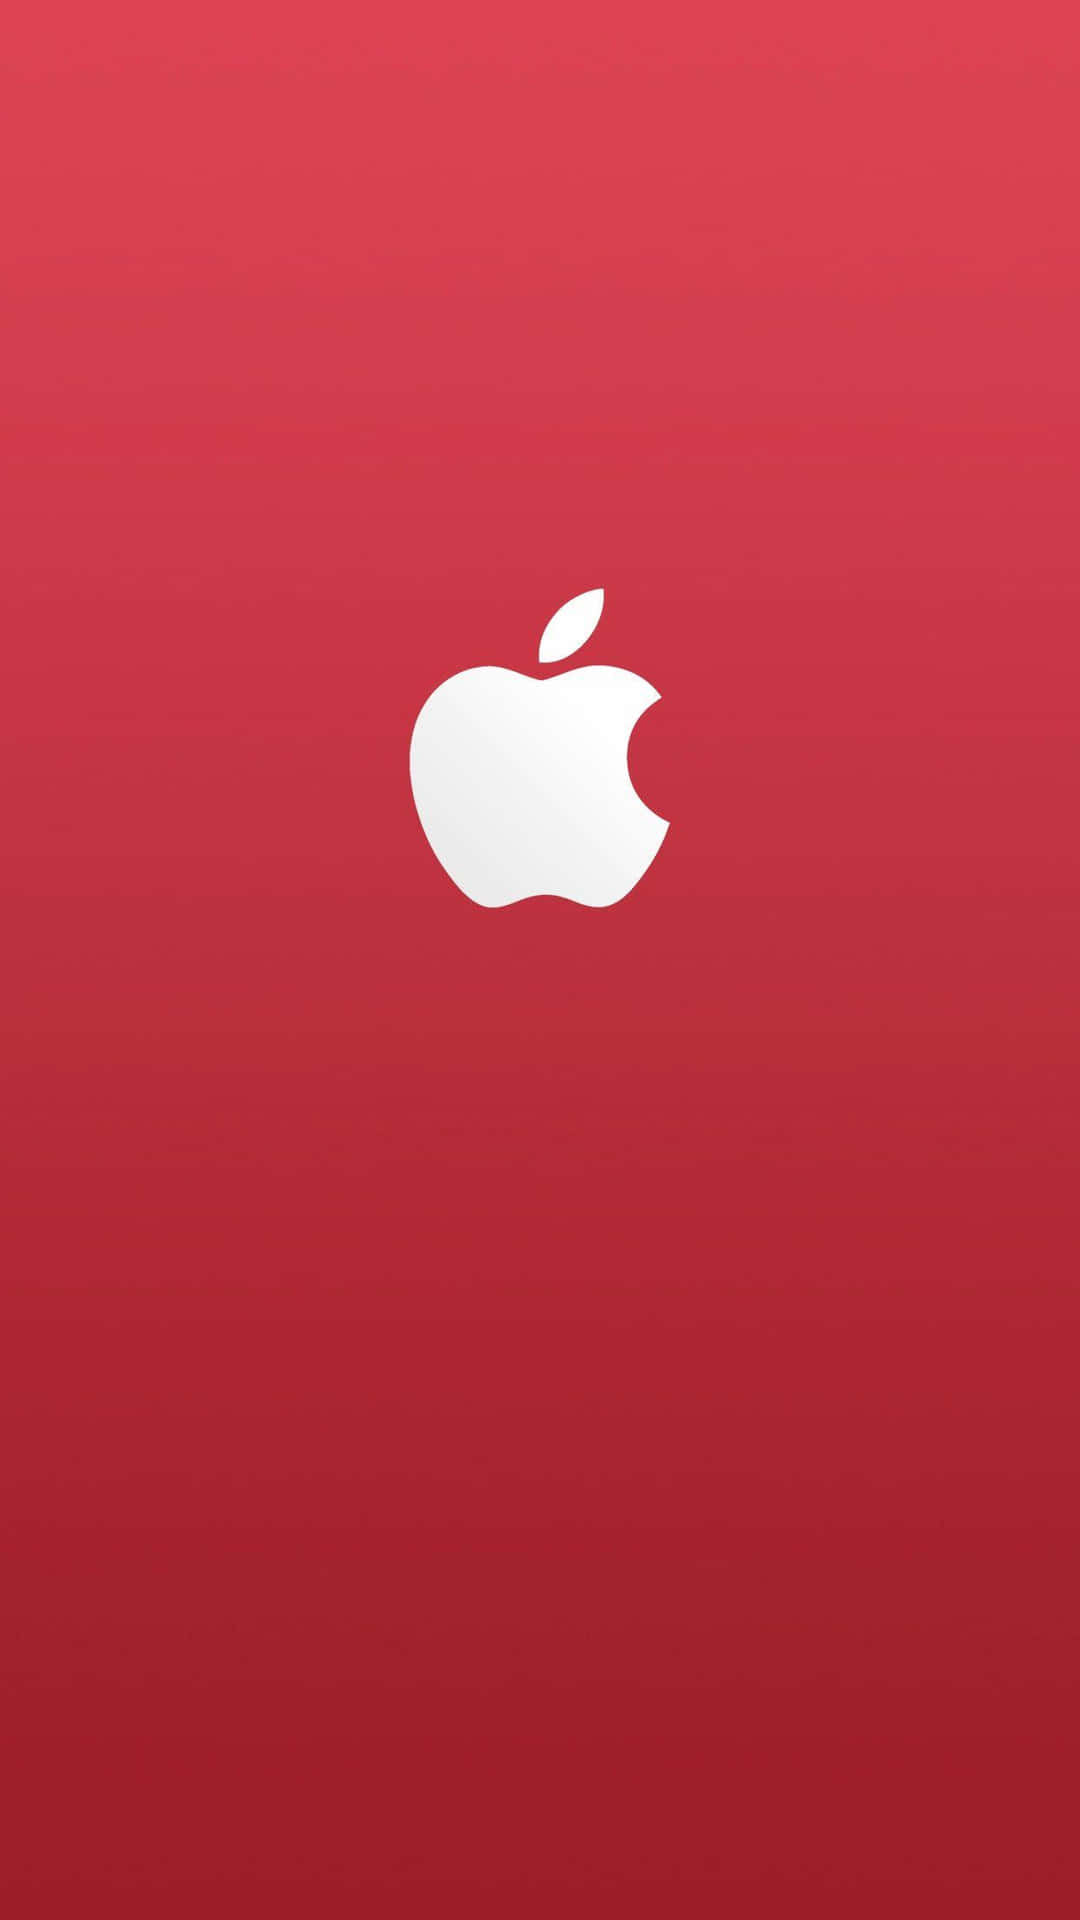 Vit Logotyp På Ett Fantastiskt Röd Äpple Hd Iphone Wallpaper